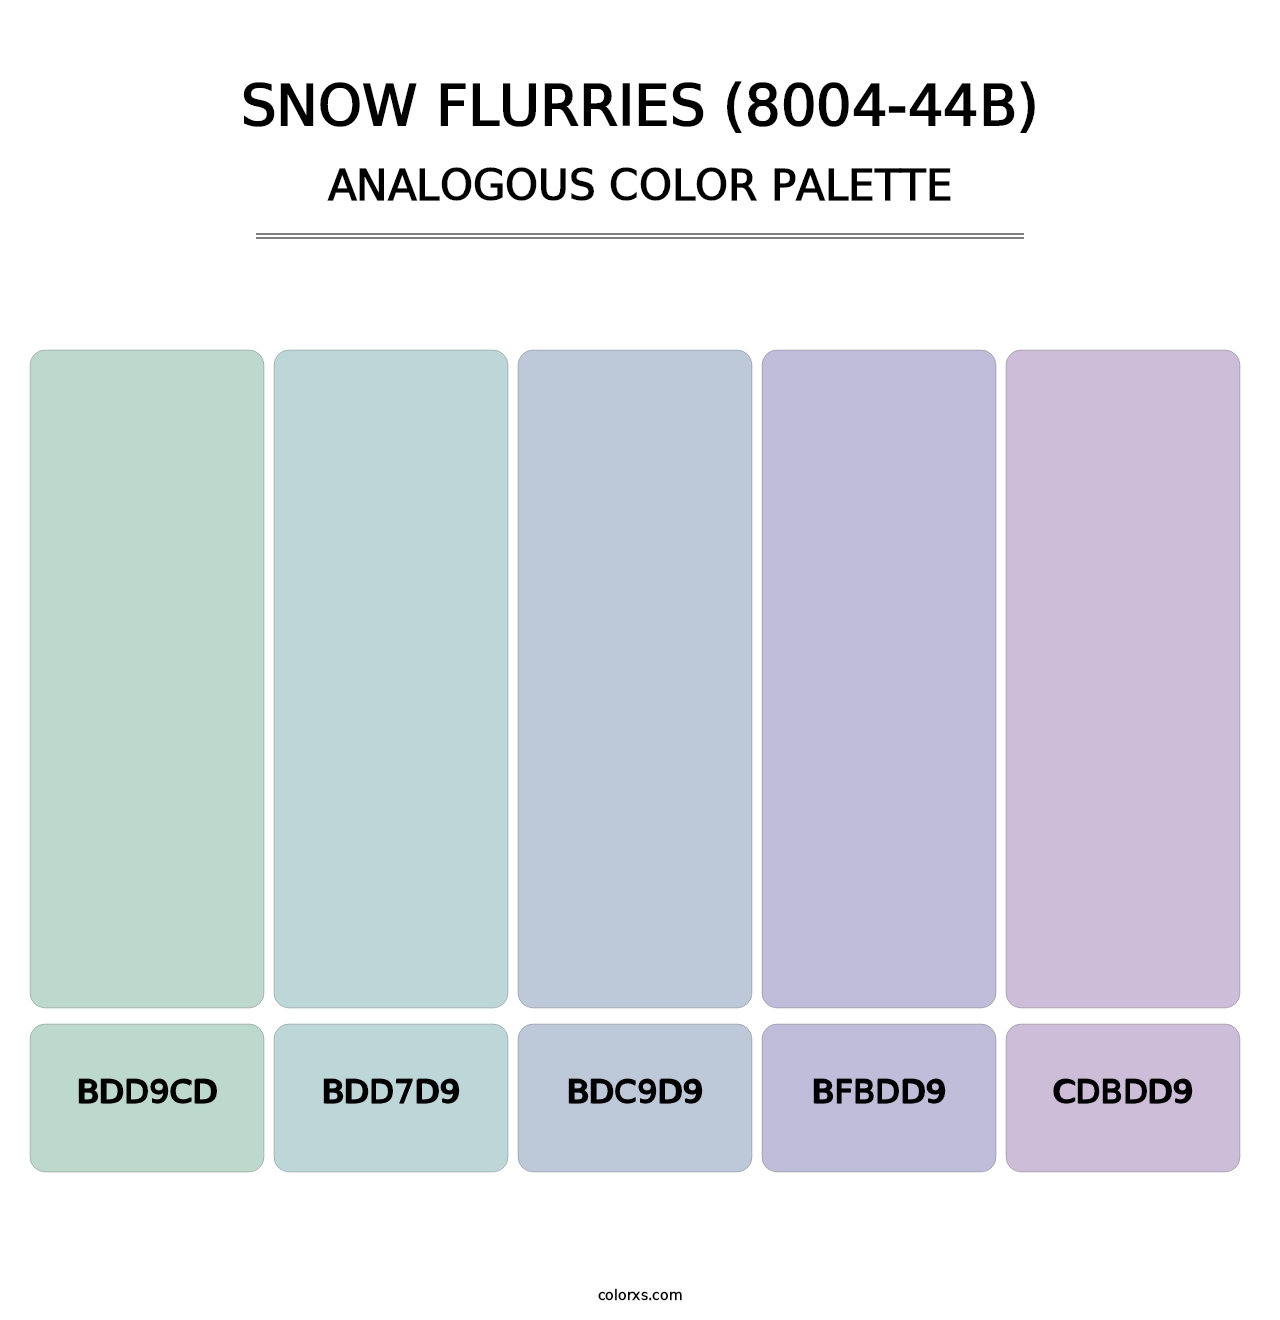 Snow Flurries (8004-44B) - Analogous Color Palette